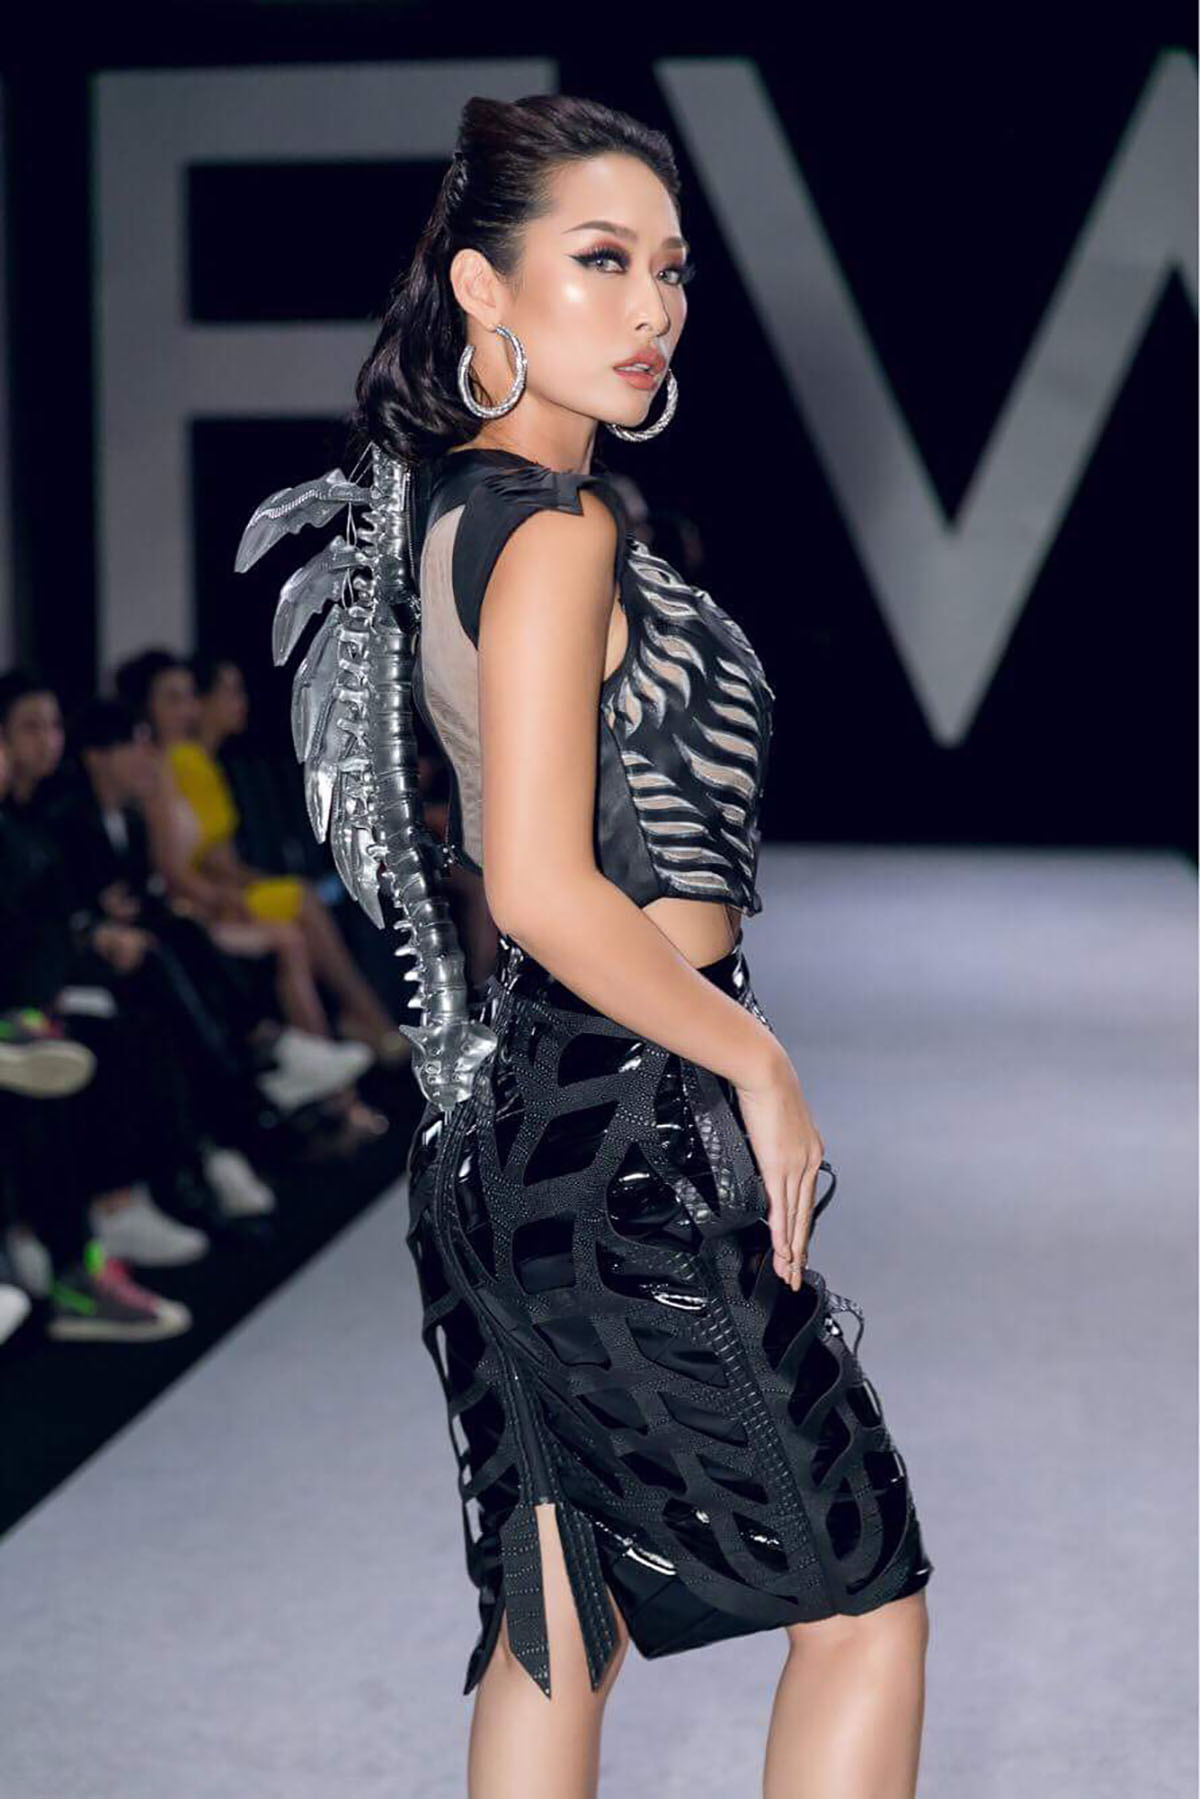 Quỳnh Thy đi coi show thời trang với bộ cánh 'gai cột sống' ấn tượng